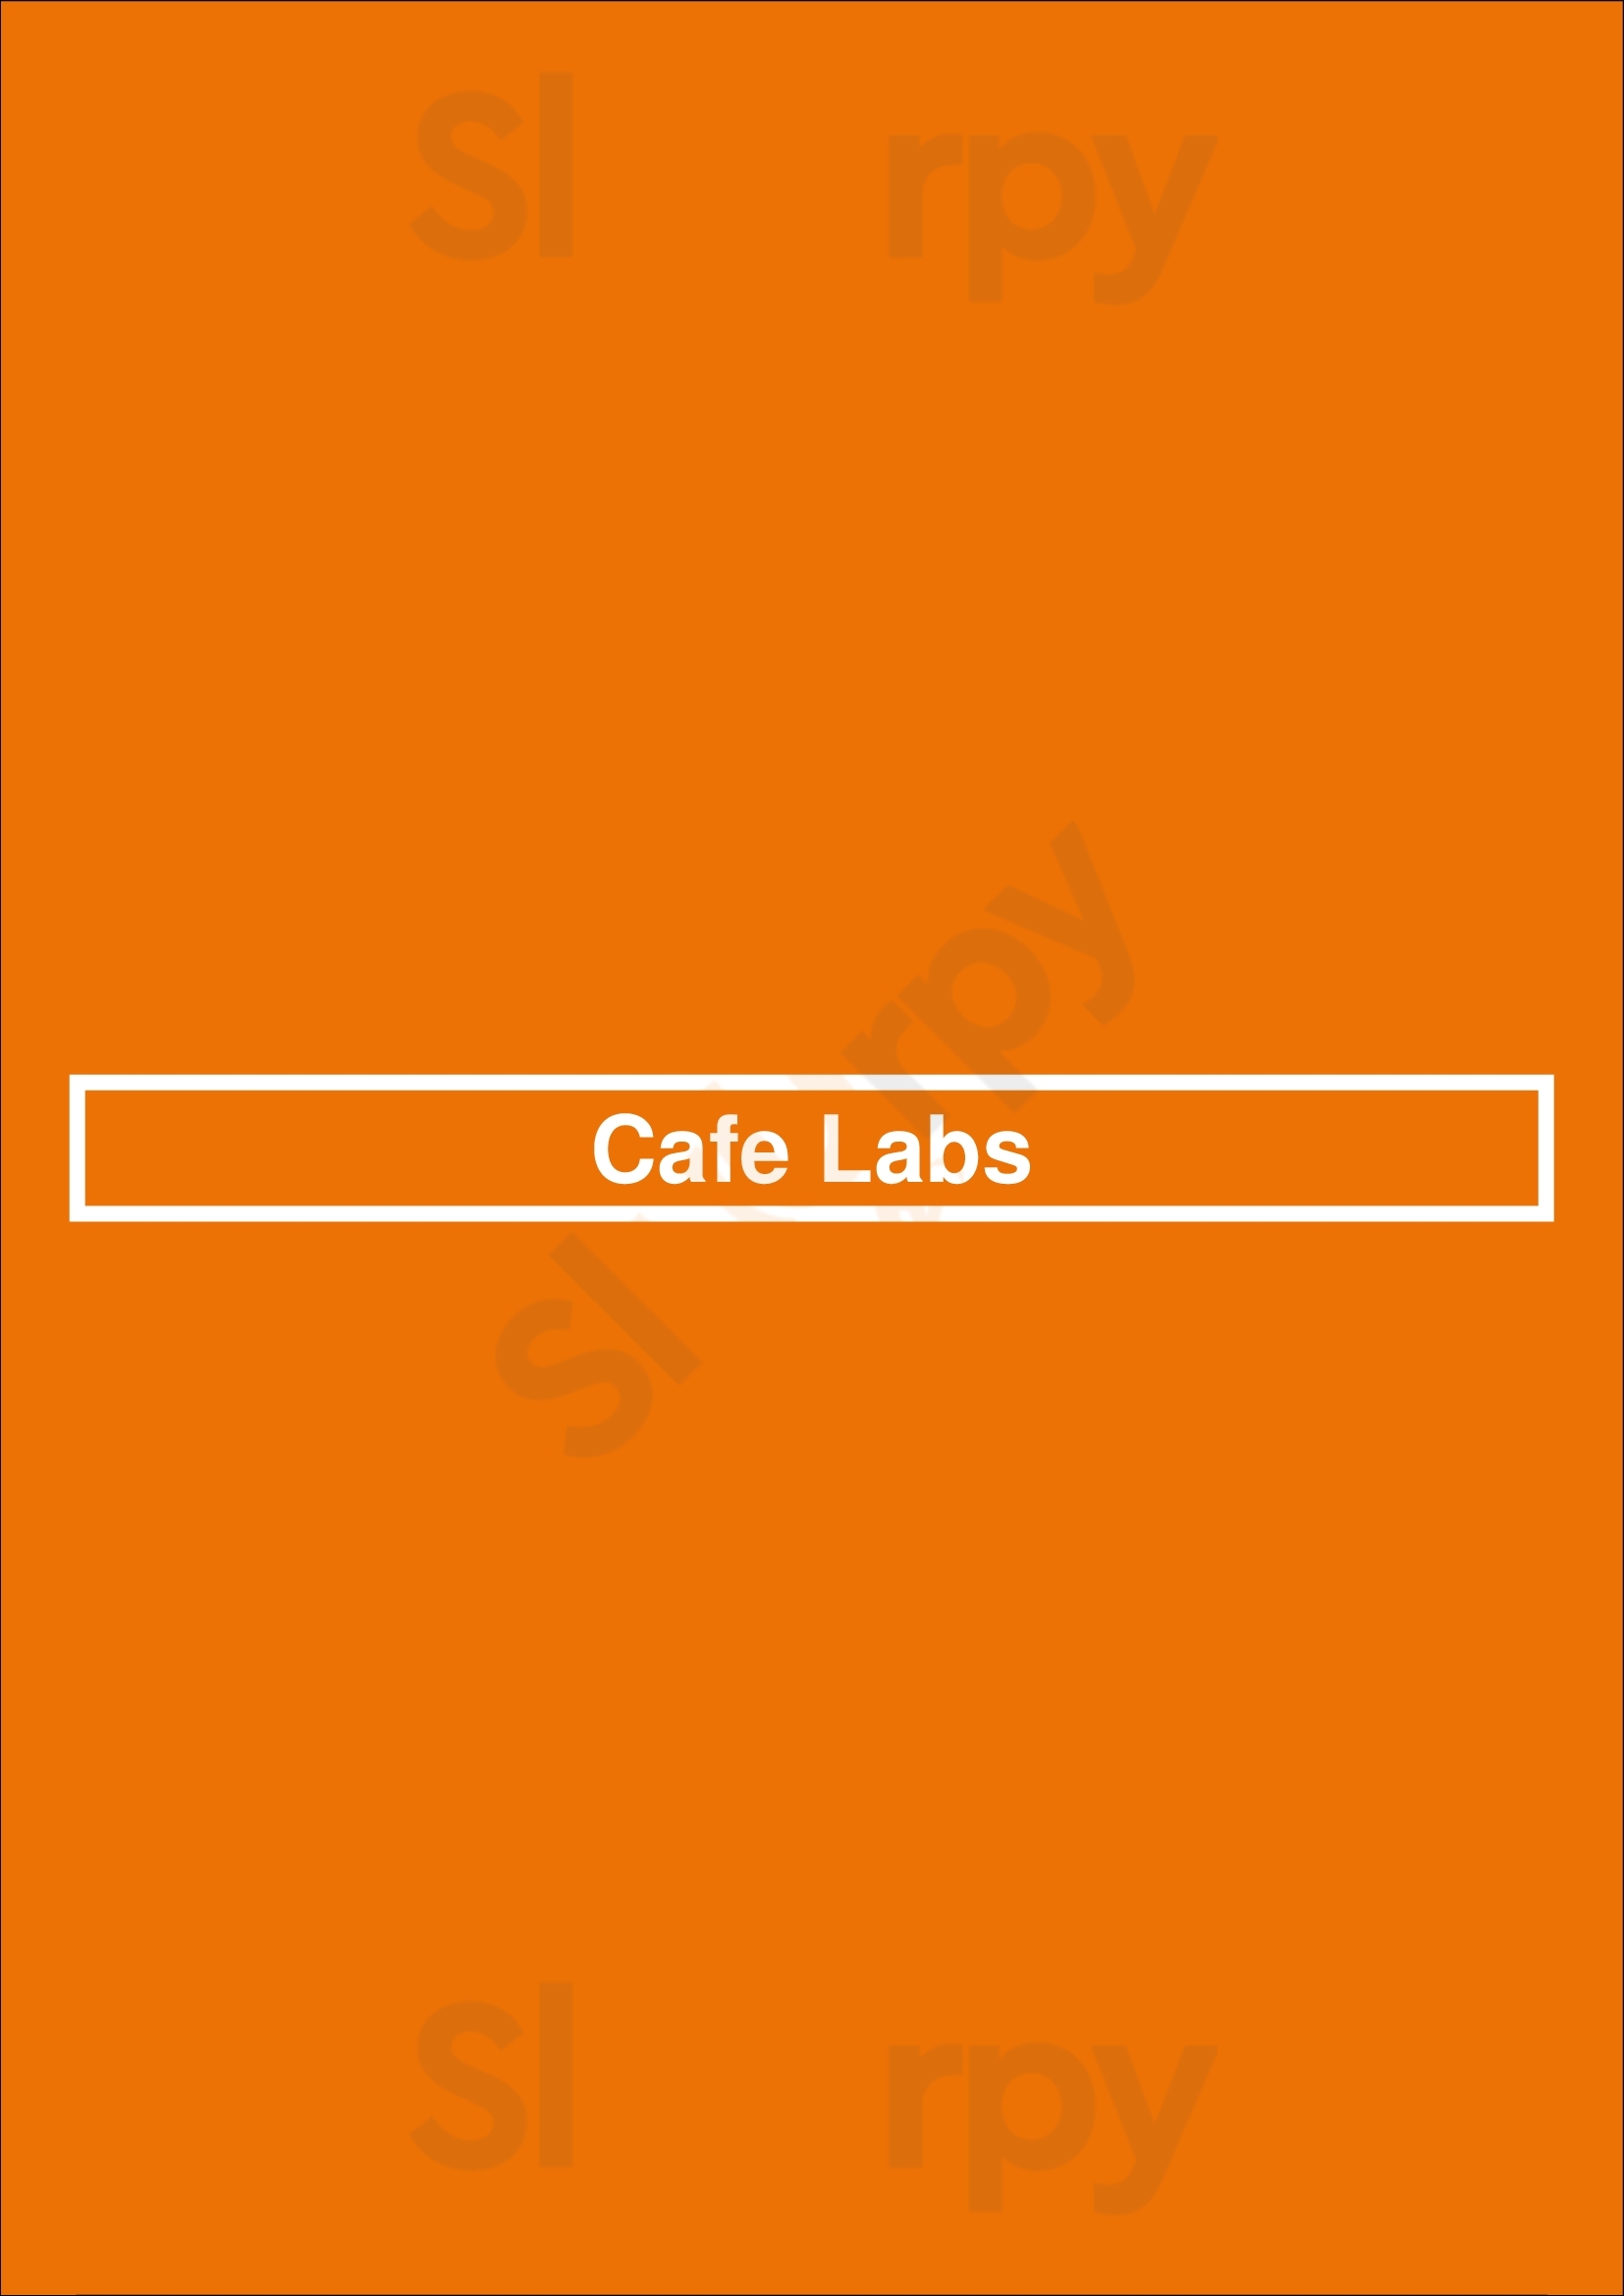 Cafe Labs Delft Menu - 1